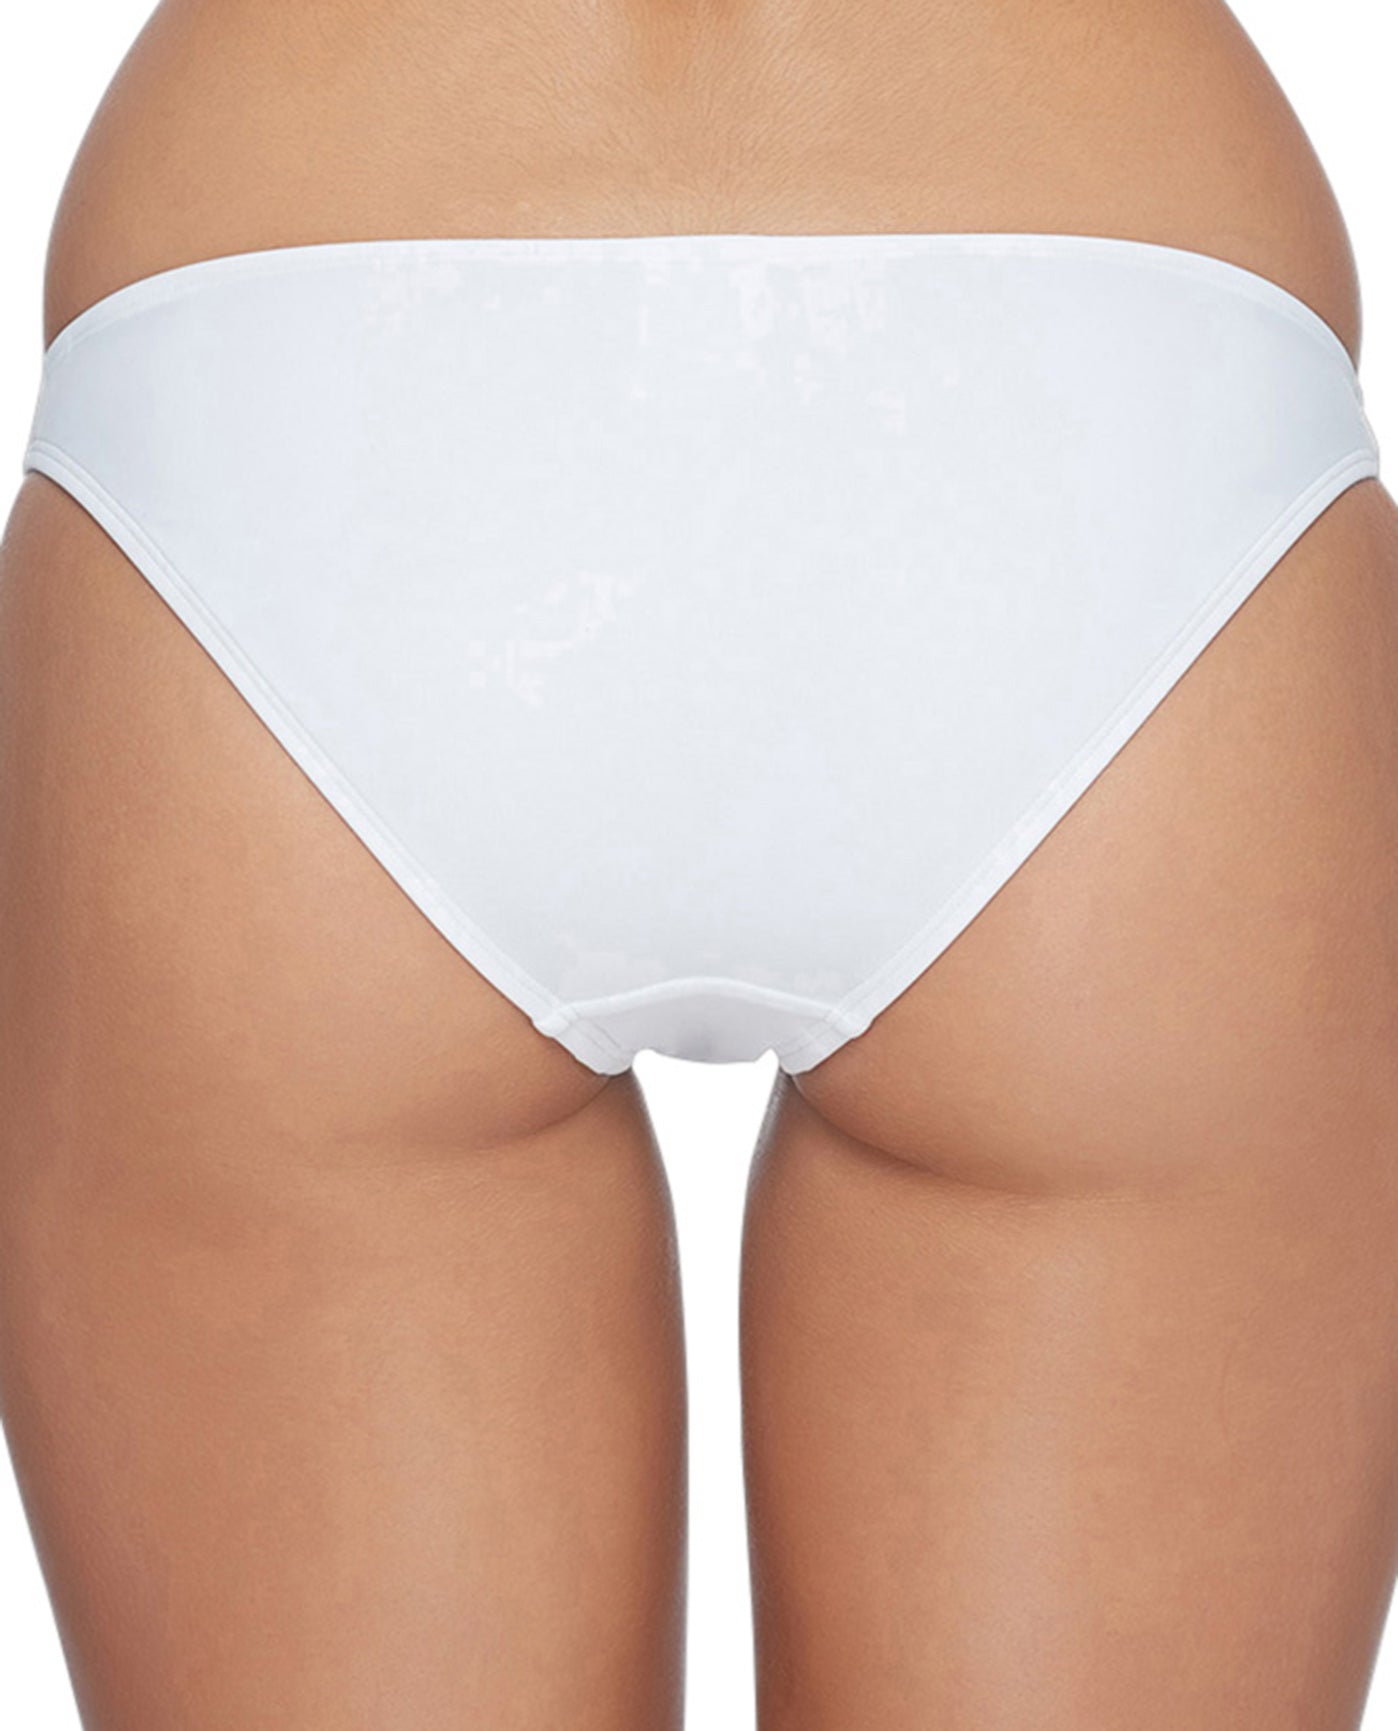 Back View Of Body Glove Smoothies Full Coverage Bikini Bottom | BDG Smoothies White